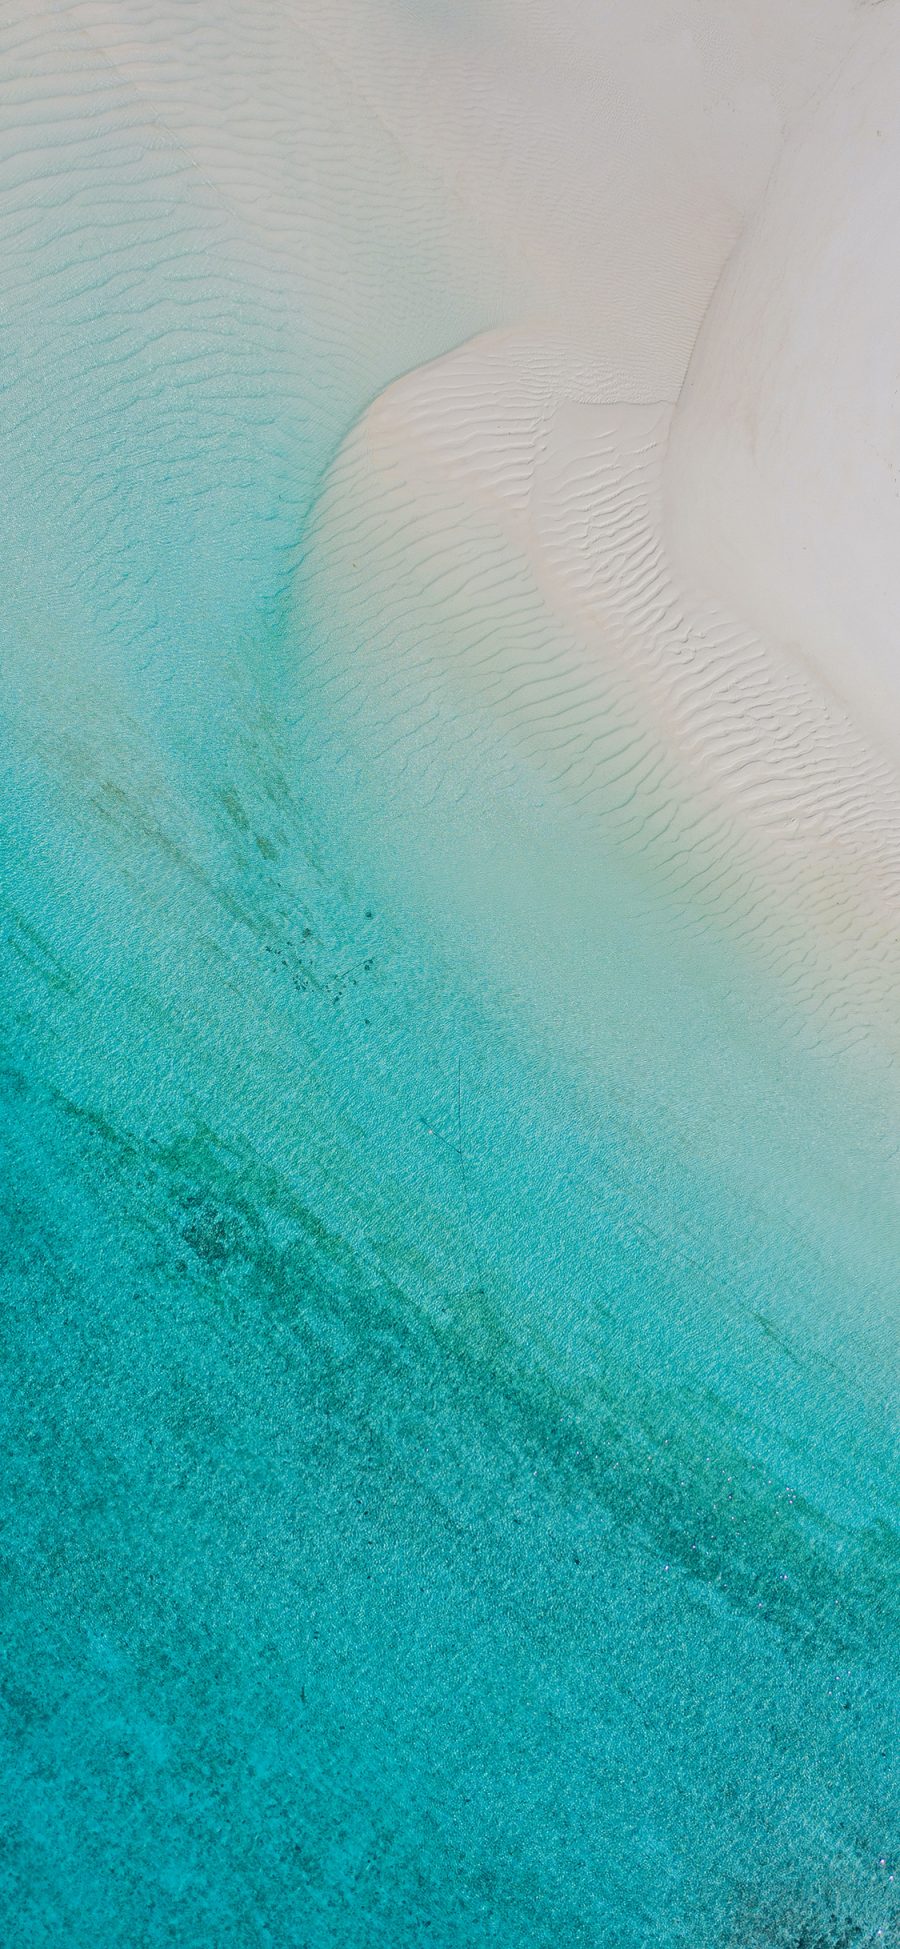 [2436×1125]大海 海洋 清澈 海水 苹果手机壁纸图片